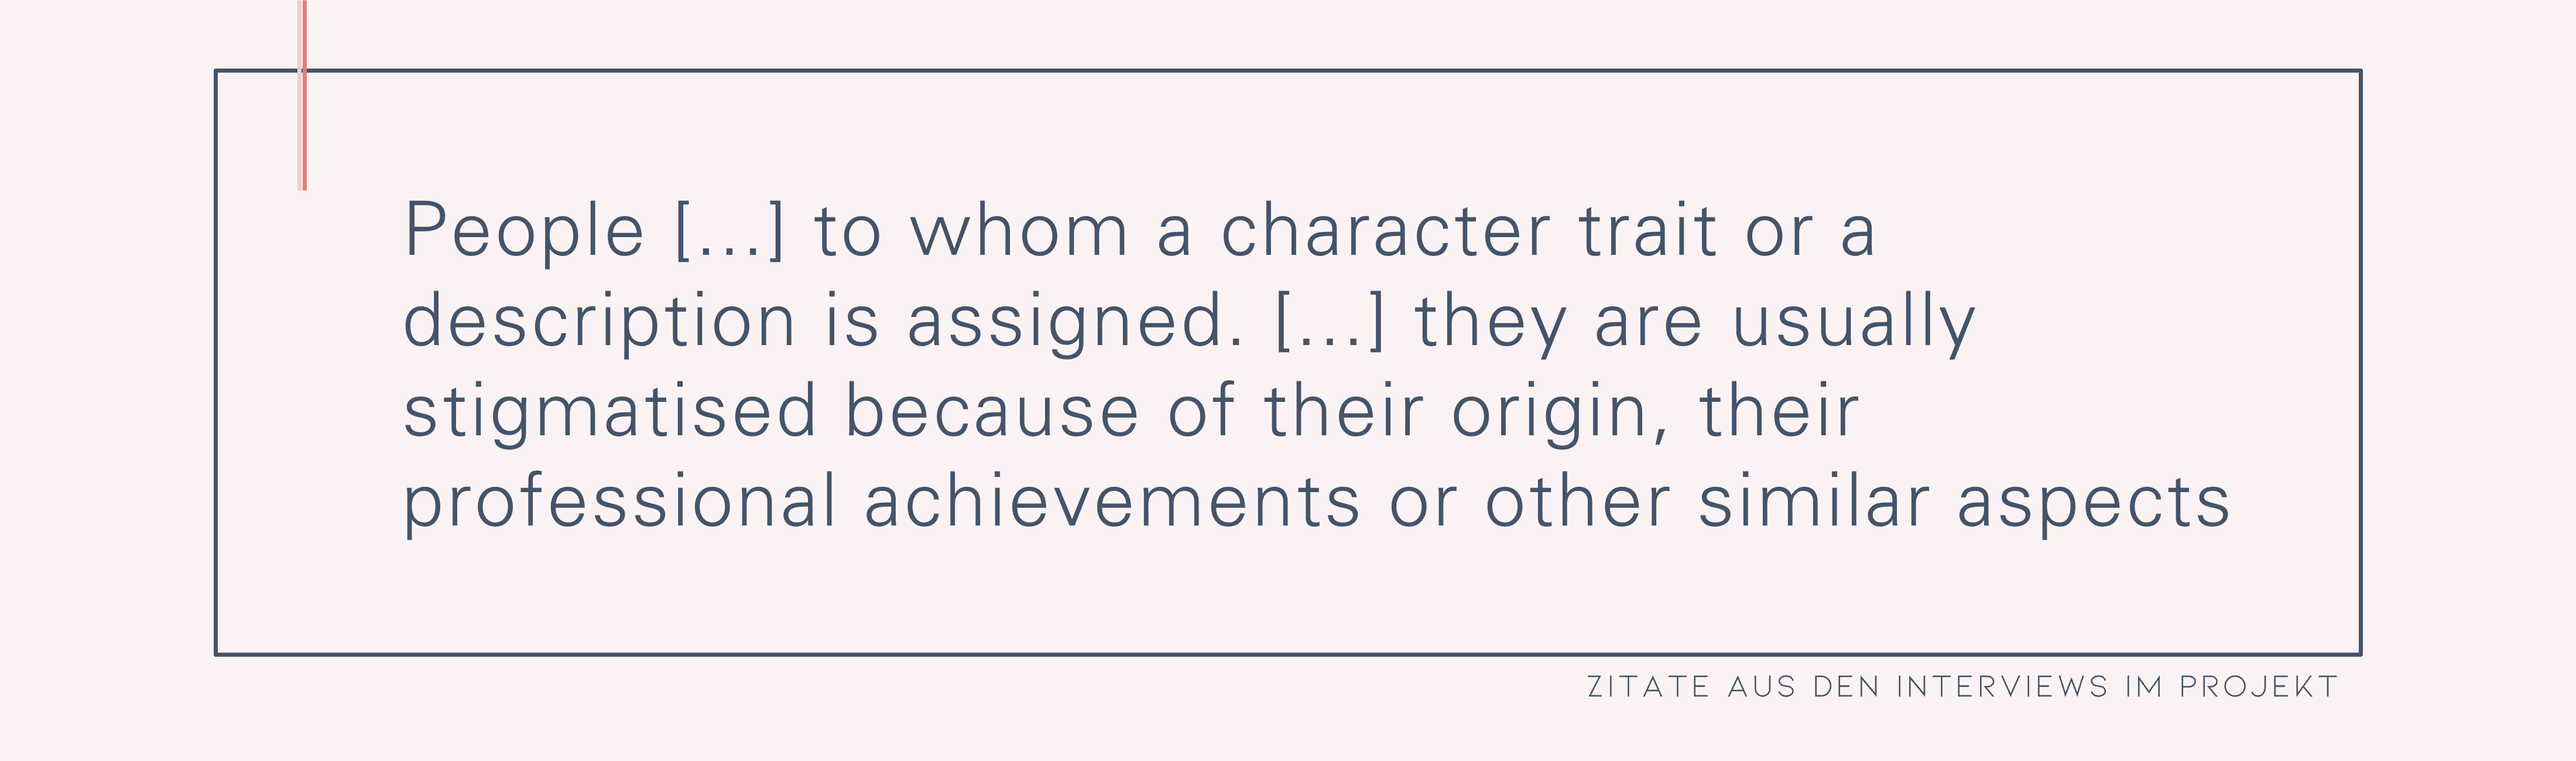 Personen […] denen eine Charaktereigenschaft oder eine Beschreibung zugeordnet wird. […] meistens wird sie ja aufgrund ihrer Herkunft, ihres beruflichen Schaffens oder solchen Überpunkten stigmatisiert